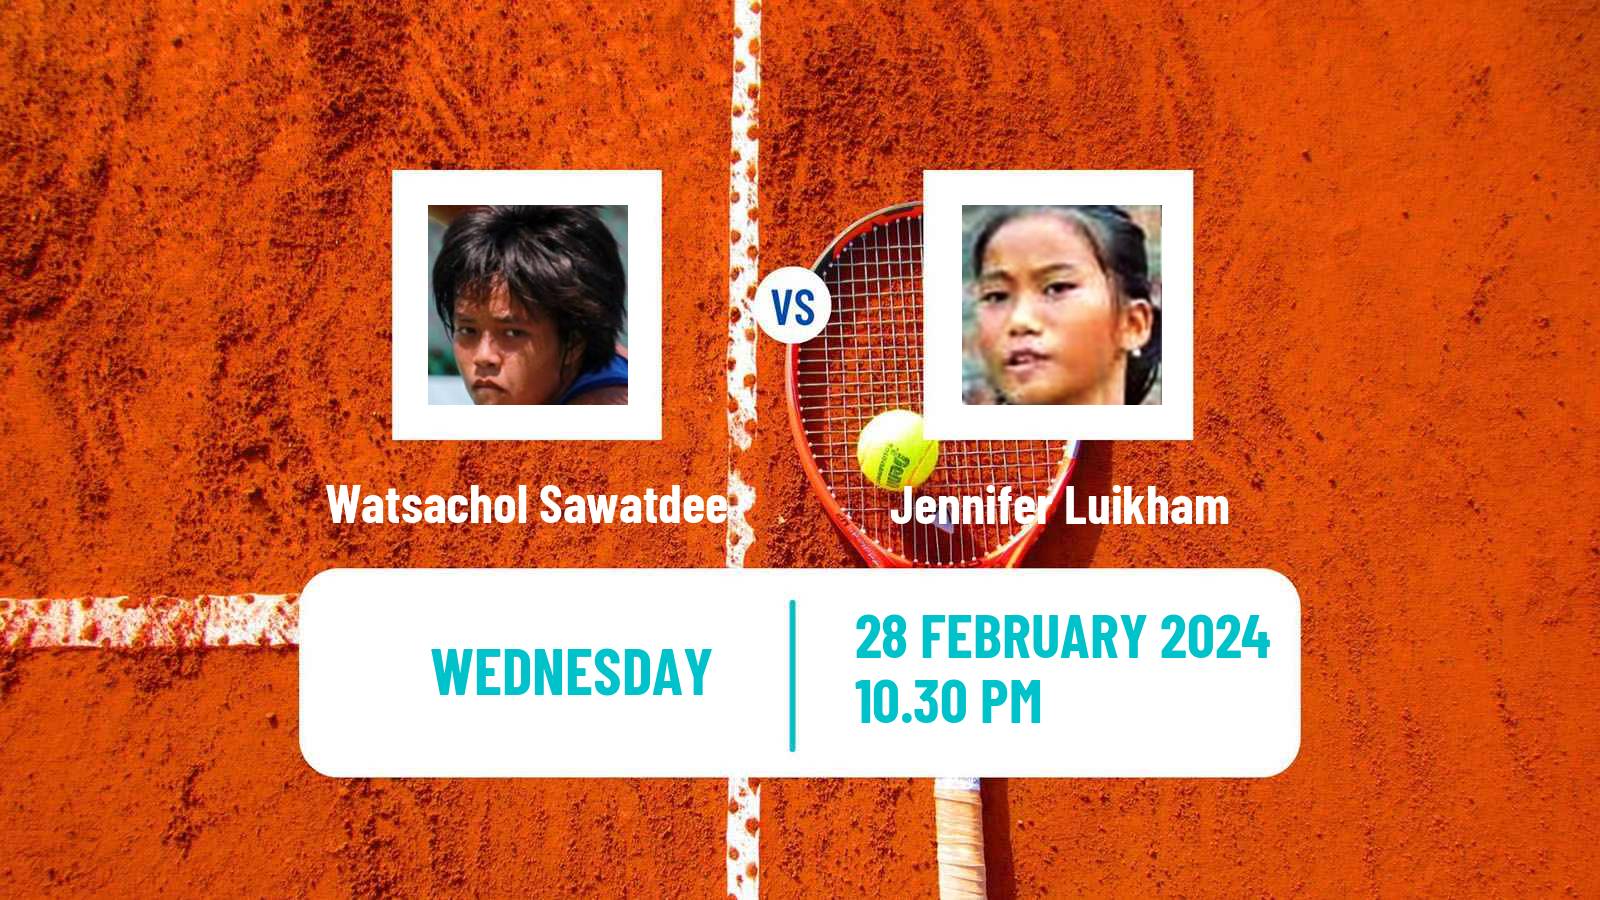 Tennis ITF W15 Nakhon Si Thammarat 2 Women Watsachol Sawatdee - Jennifer Luikham